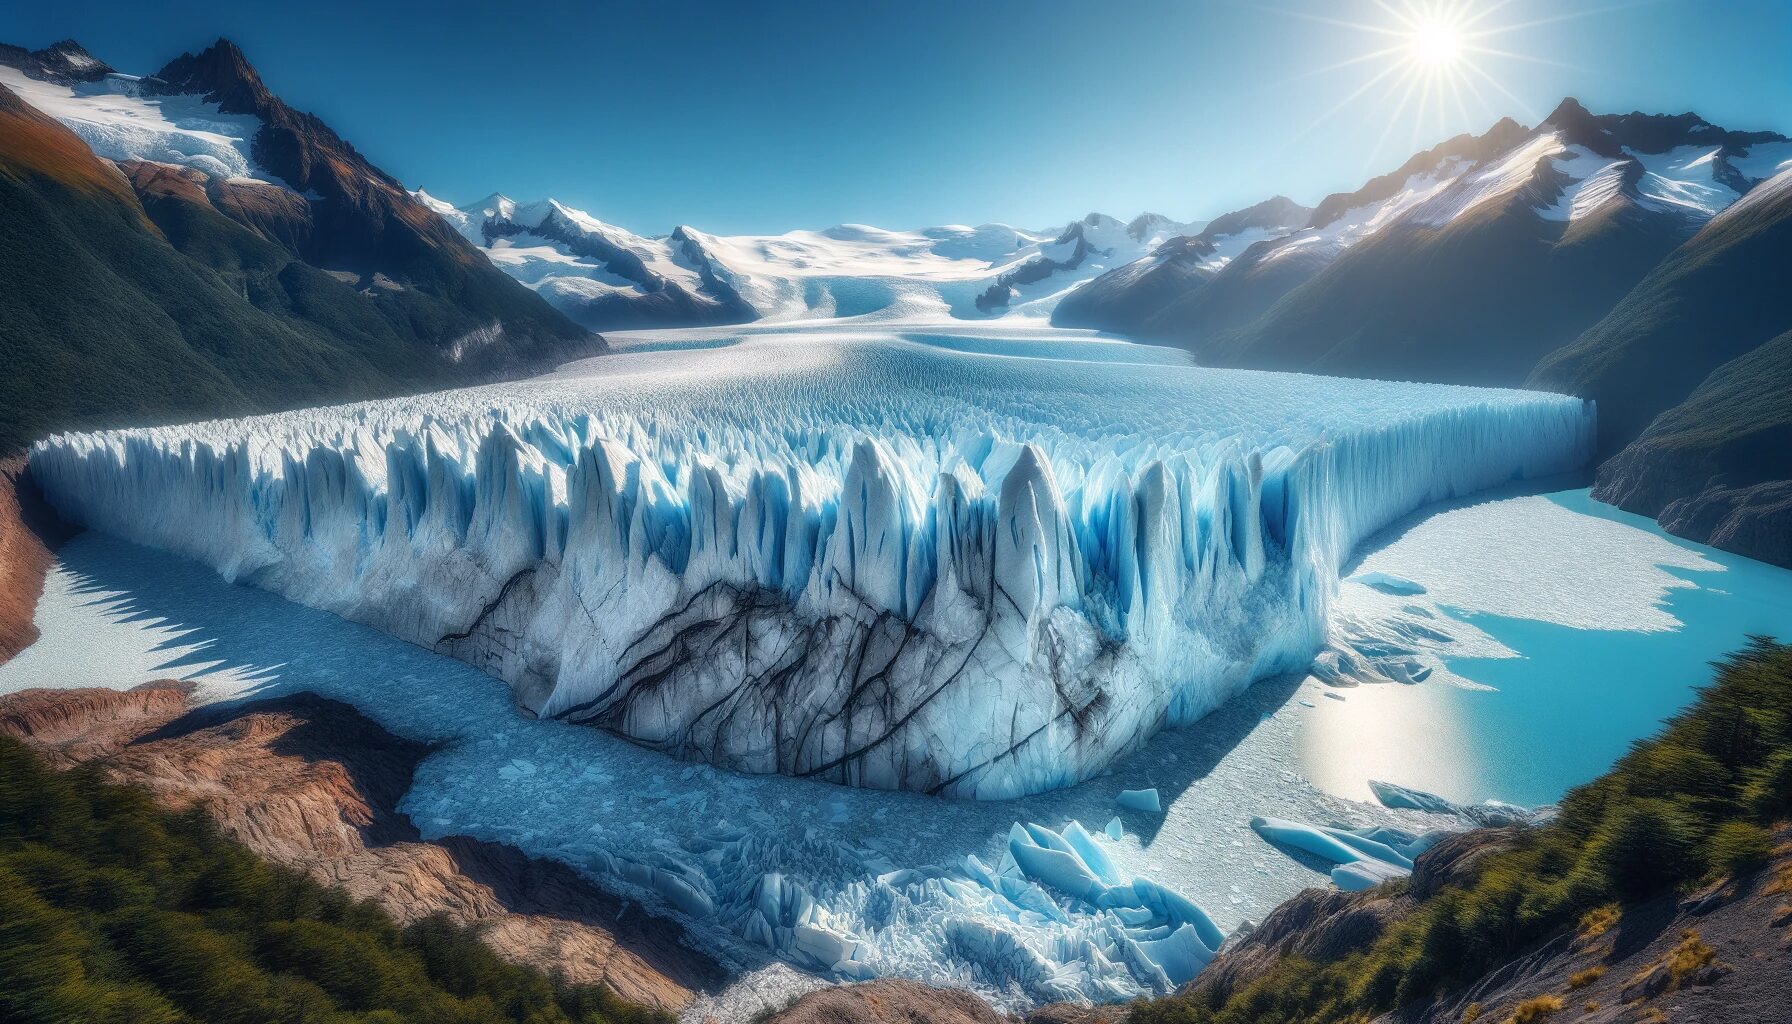 アルゼンチン・ペリトモレノ氷河の壮大な景観 - 無料写真素材